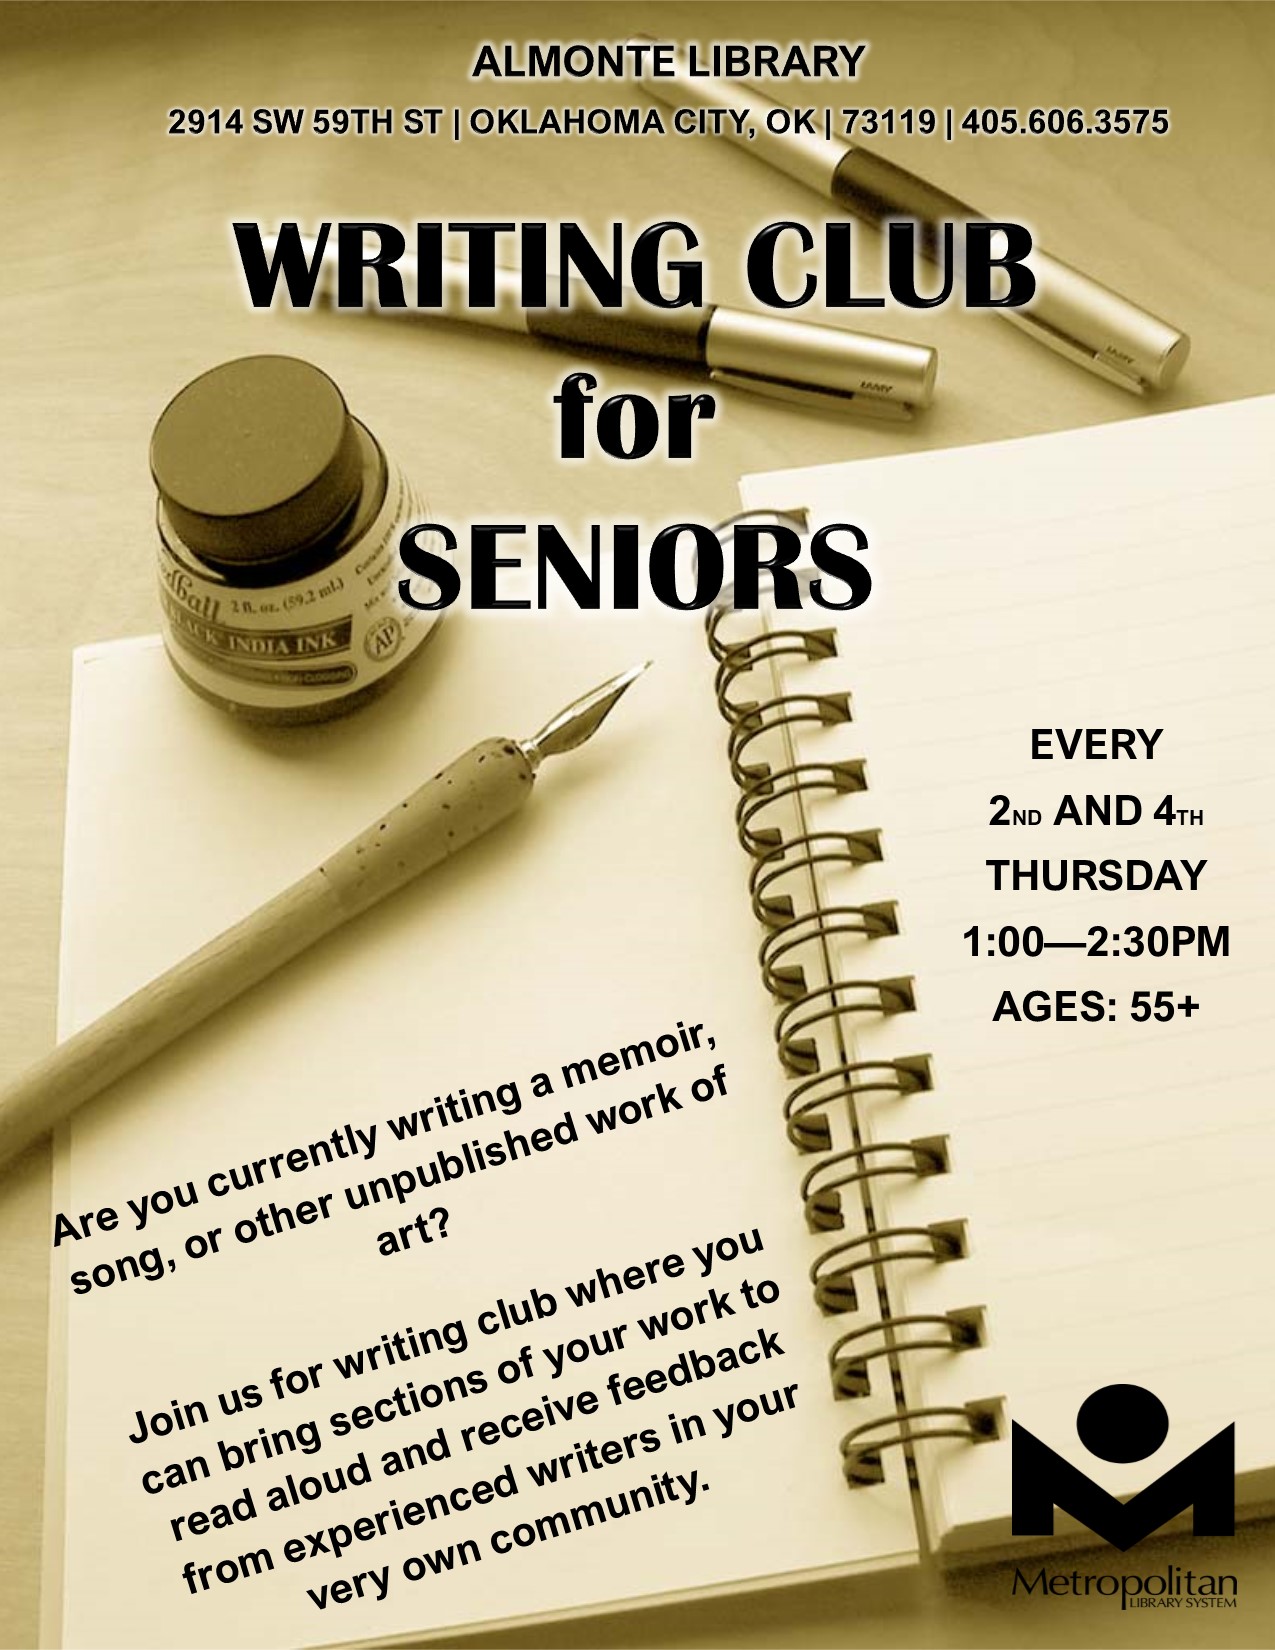 WRITING CLUB FOR SENIORS